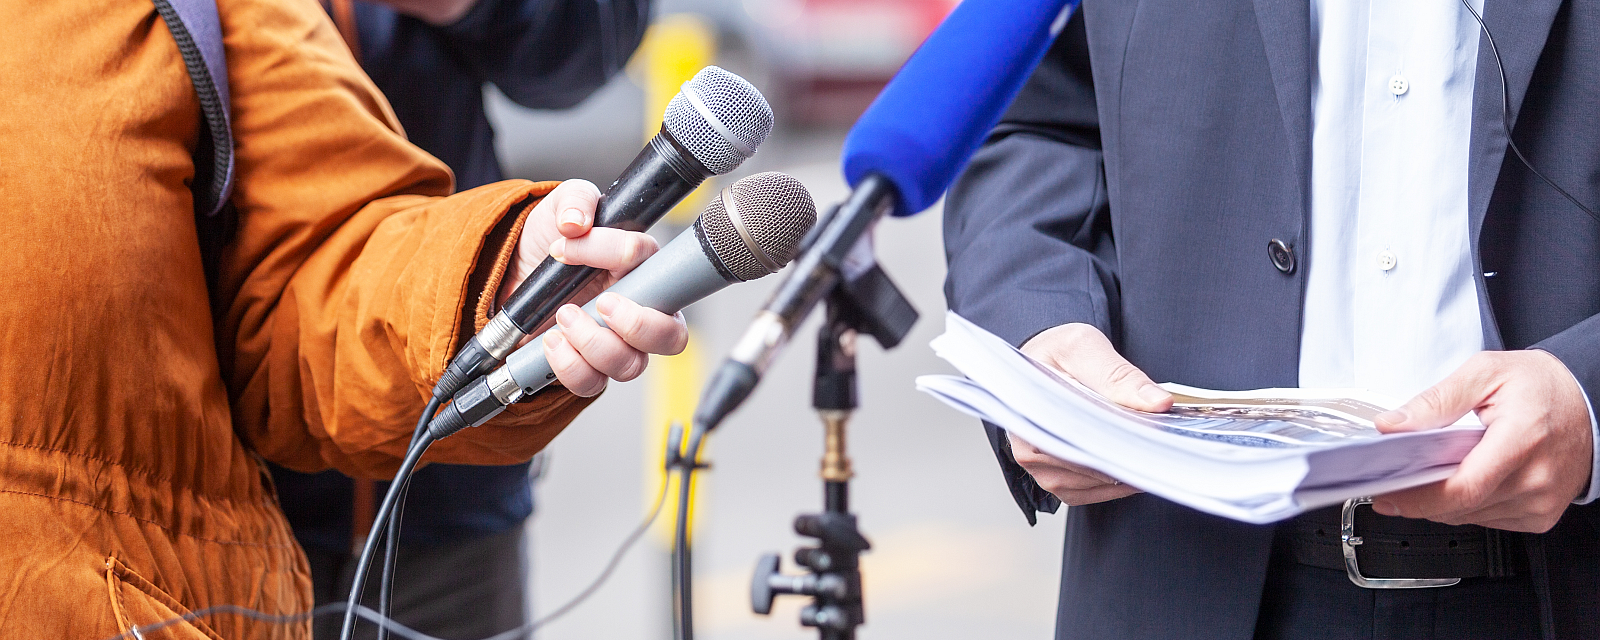 Foto: Interviewsituation, im Vordergrund Mikrofone, dahinter Interviewter im Anzug mit Dokumenten in den Händen.© wellphoto/stock.adobe.com